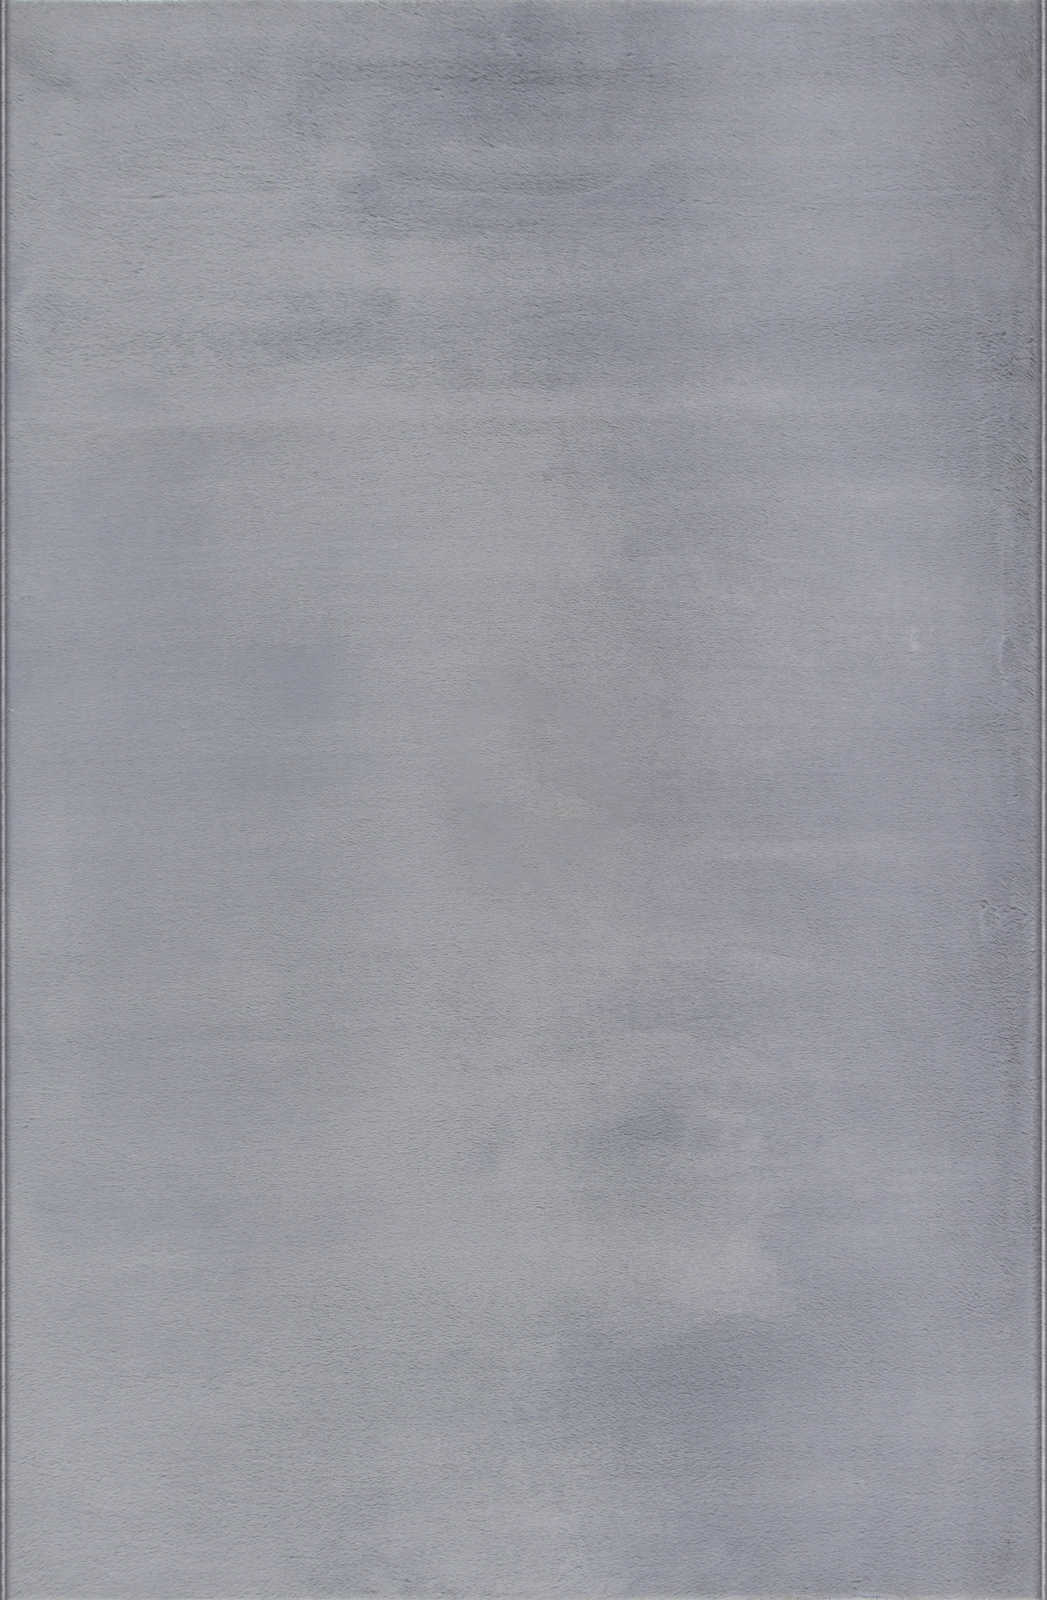             Angenehmer Hochflor Teppich in sanften Grau – 340 x 240 cm
        